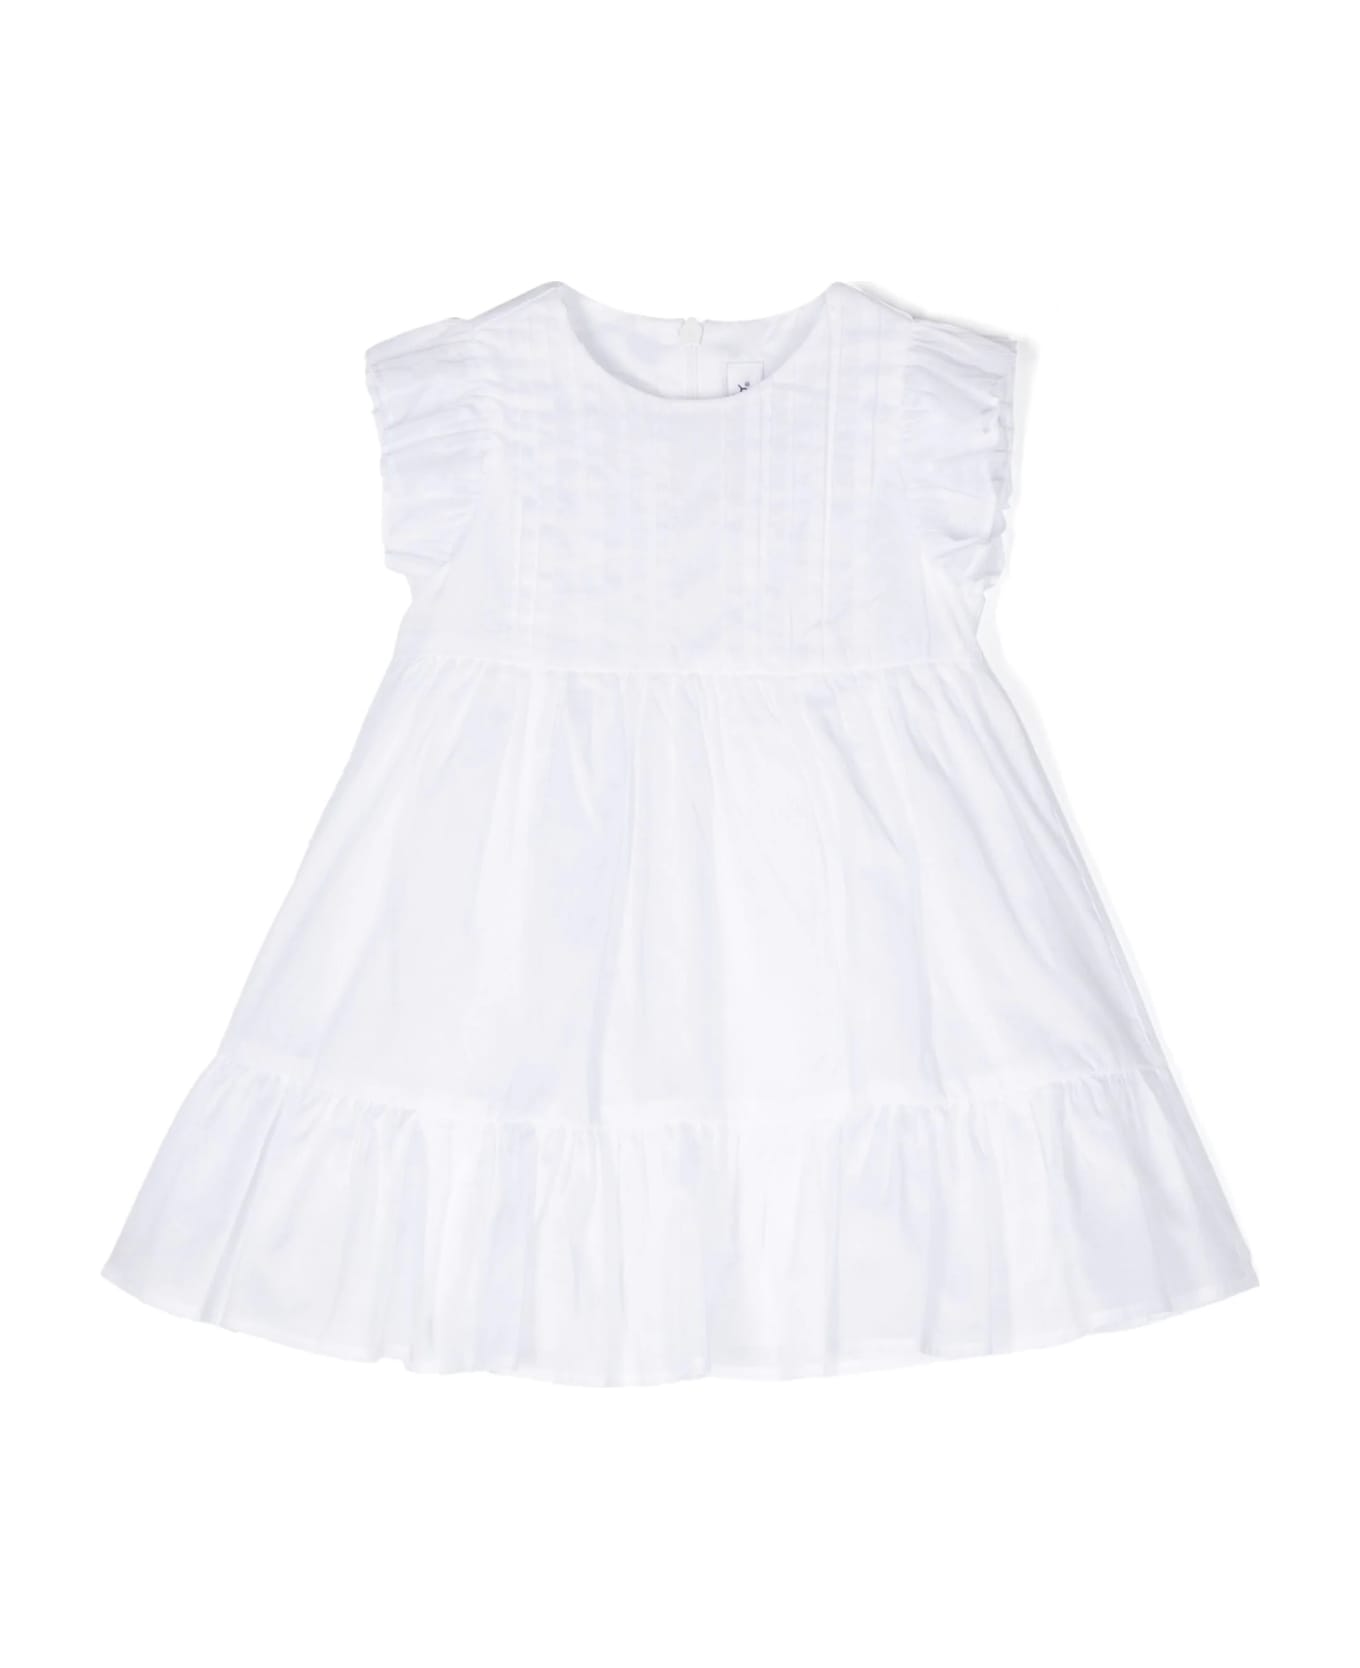 Il Gufo White Cotton Voile Dress With Culotte - White